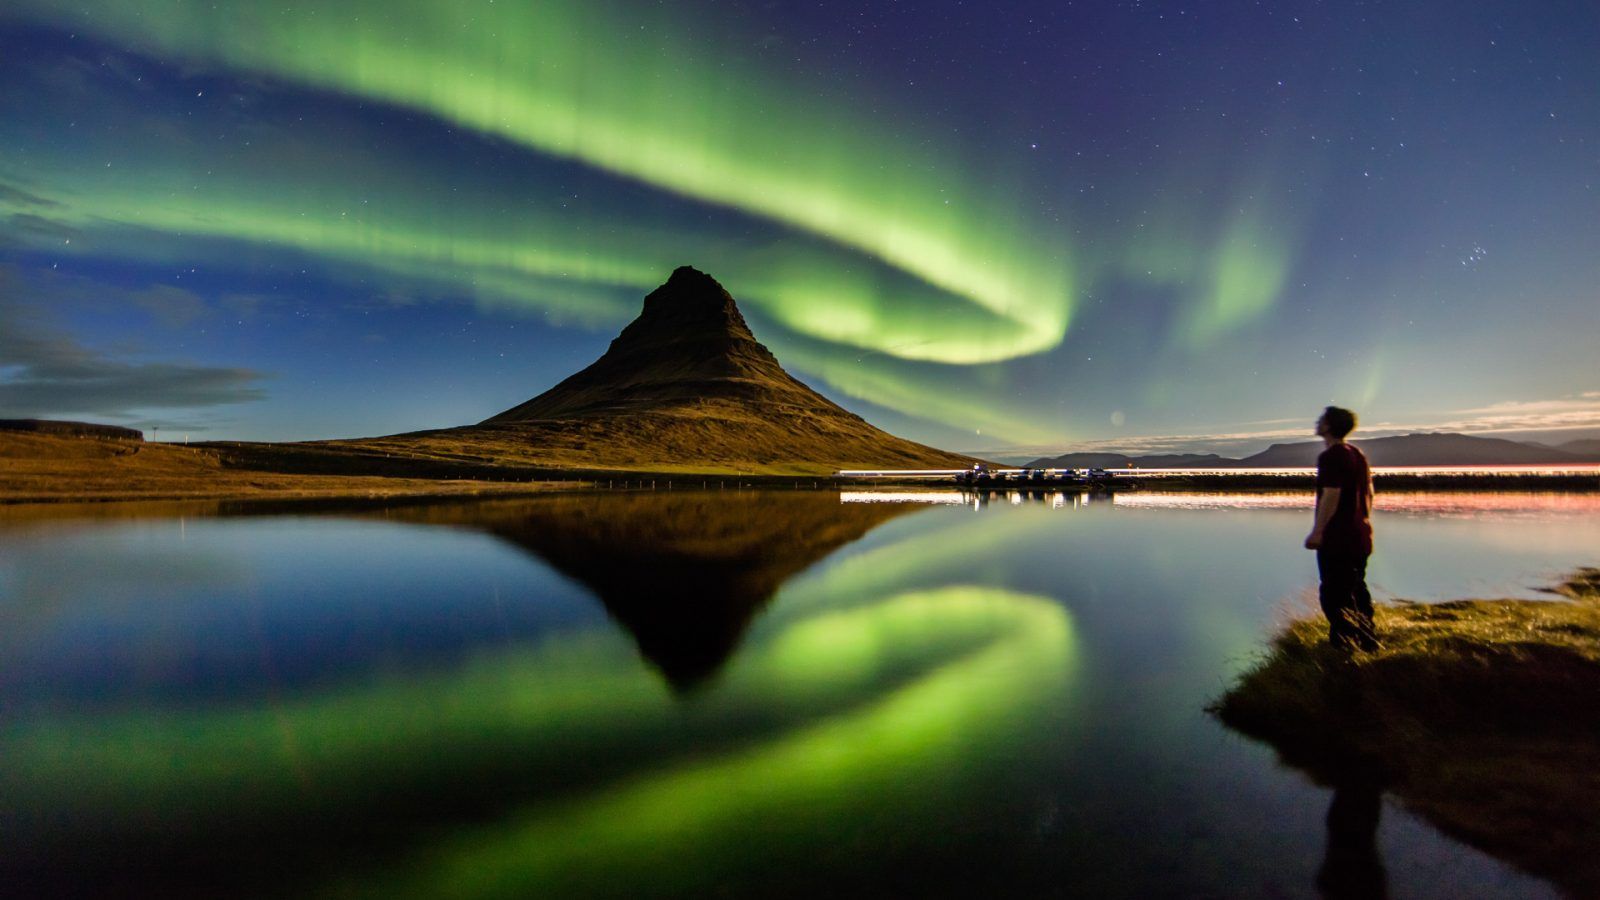 เที่ยวไอซ์แลนด์ ดูแสงเหนือ ต้องเตรียมตัวยังไงบ้าง